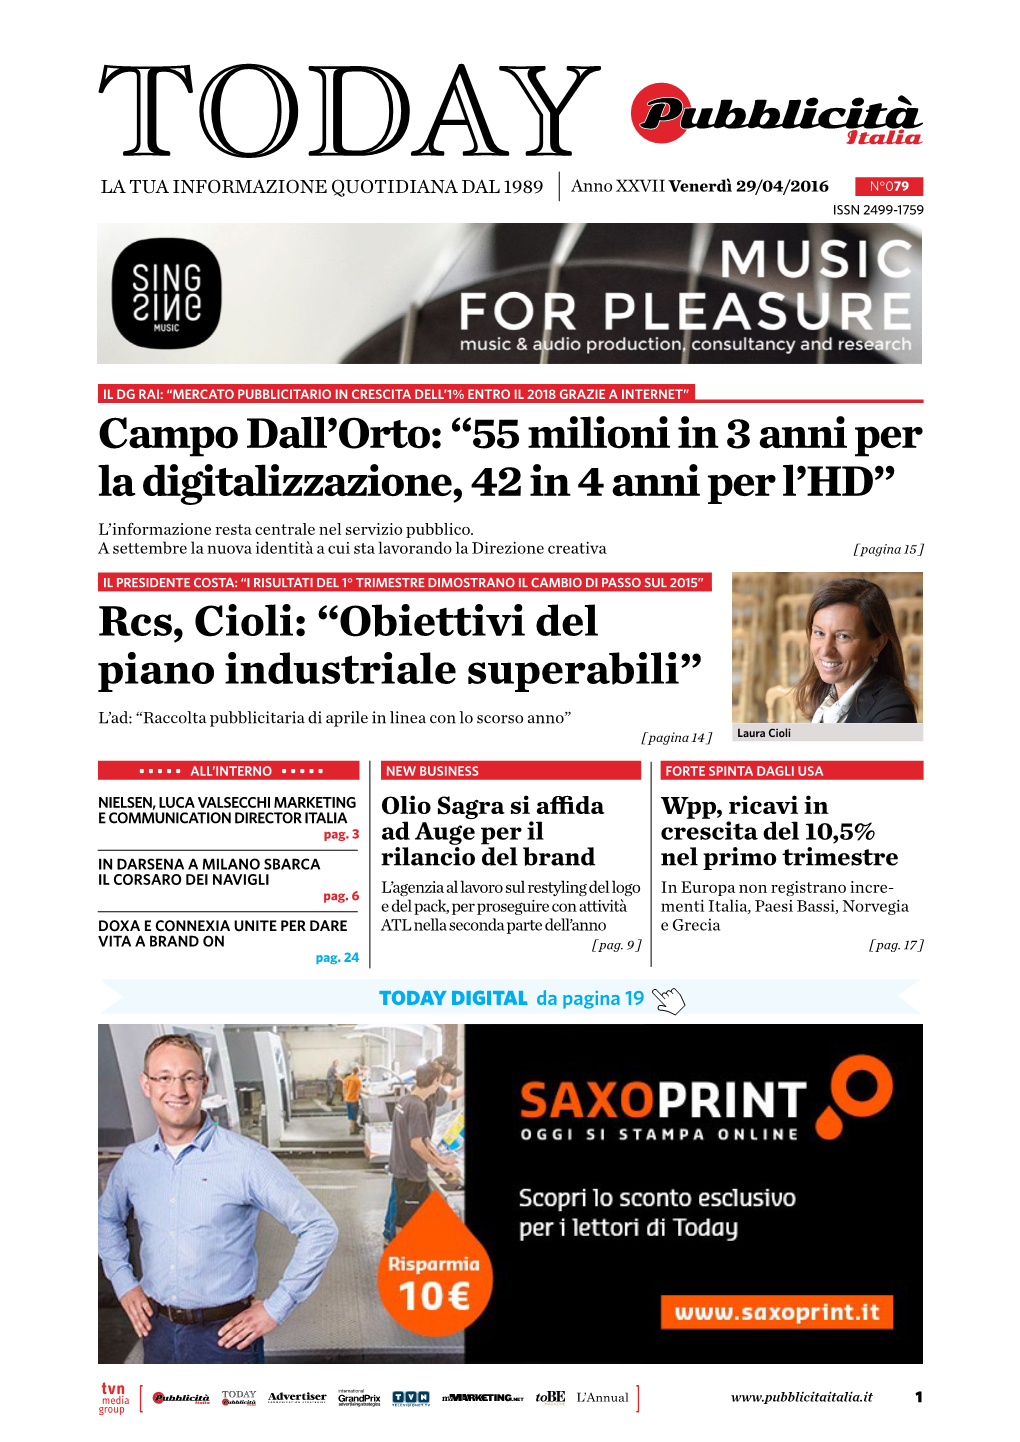 Rcs, Cioli: “Obiettivi Del Piano Industriale Superabili” L’Ad: “Raccolta Pubblicitaria Di Aprile in Linea Con Lo Scorso Anno” [ Pagina 14 ] Laura Cioli